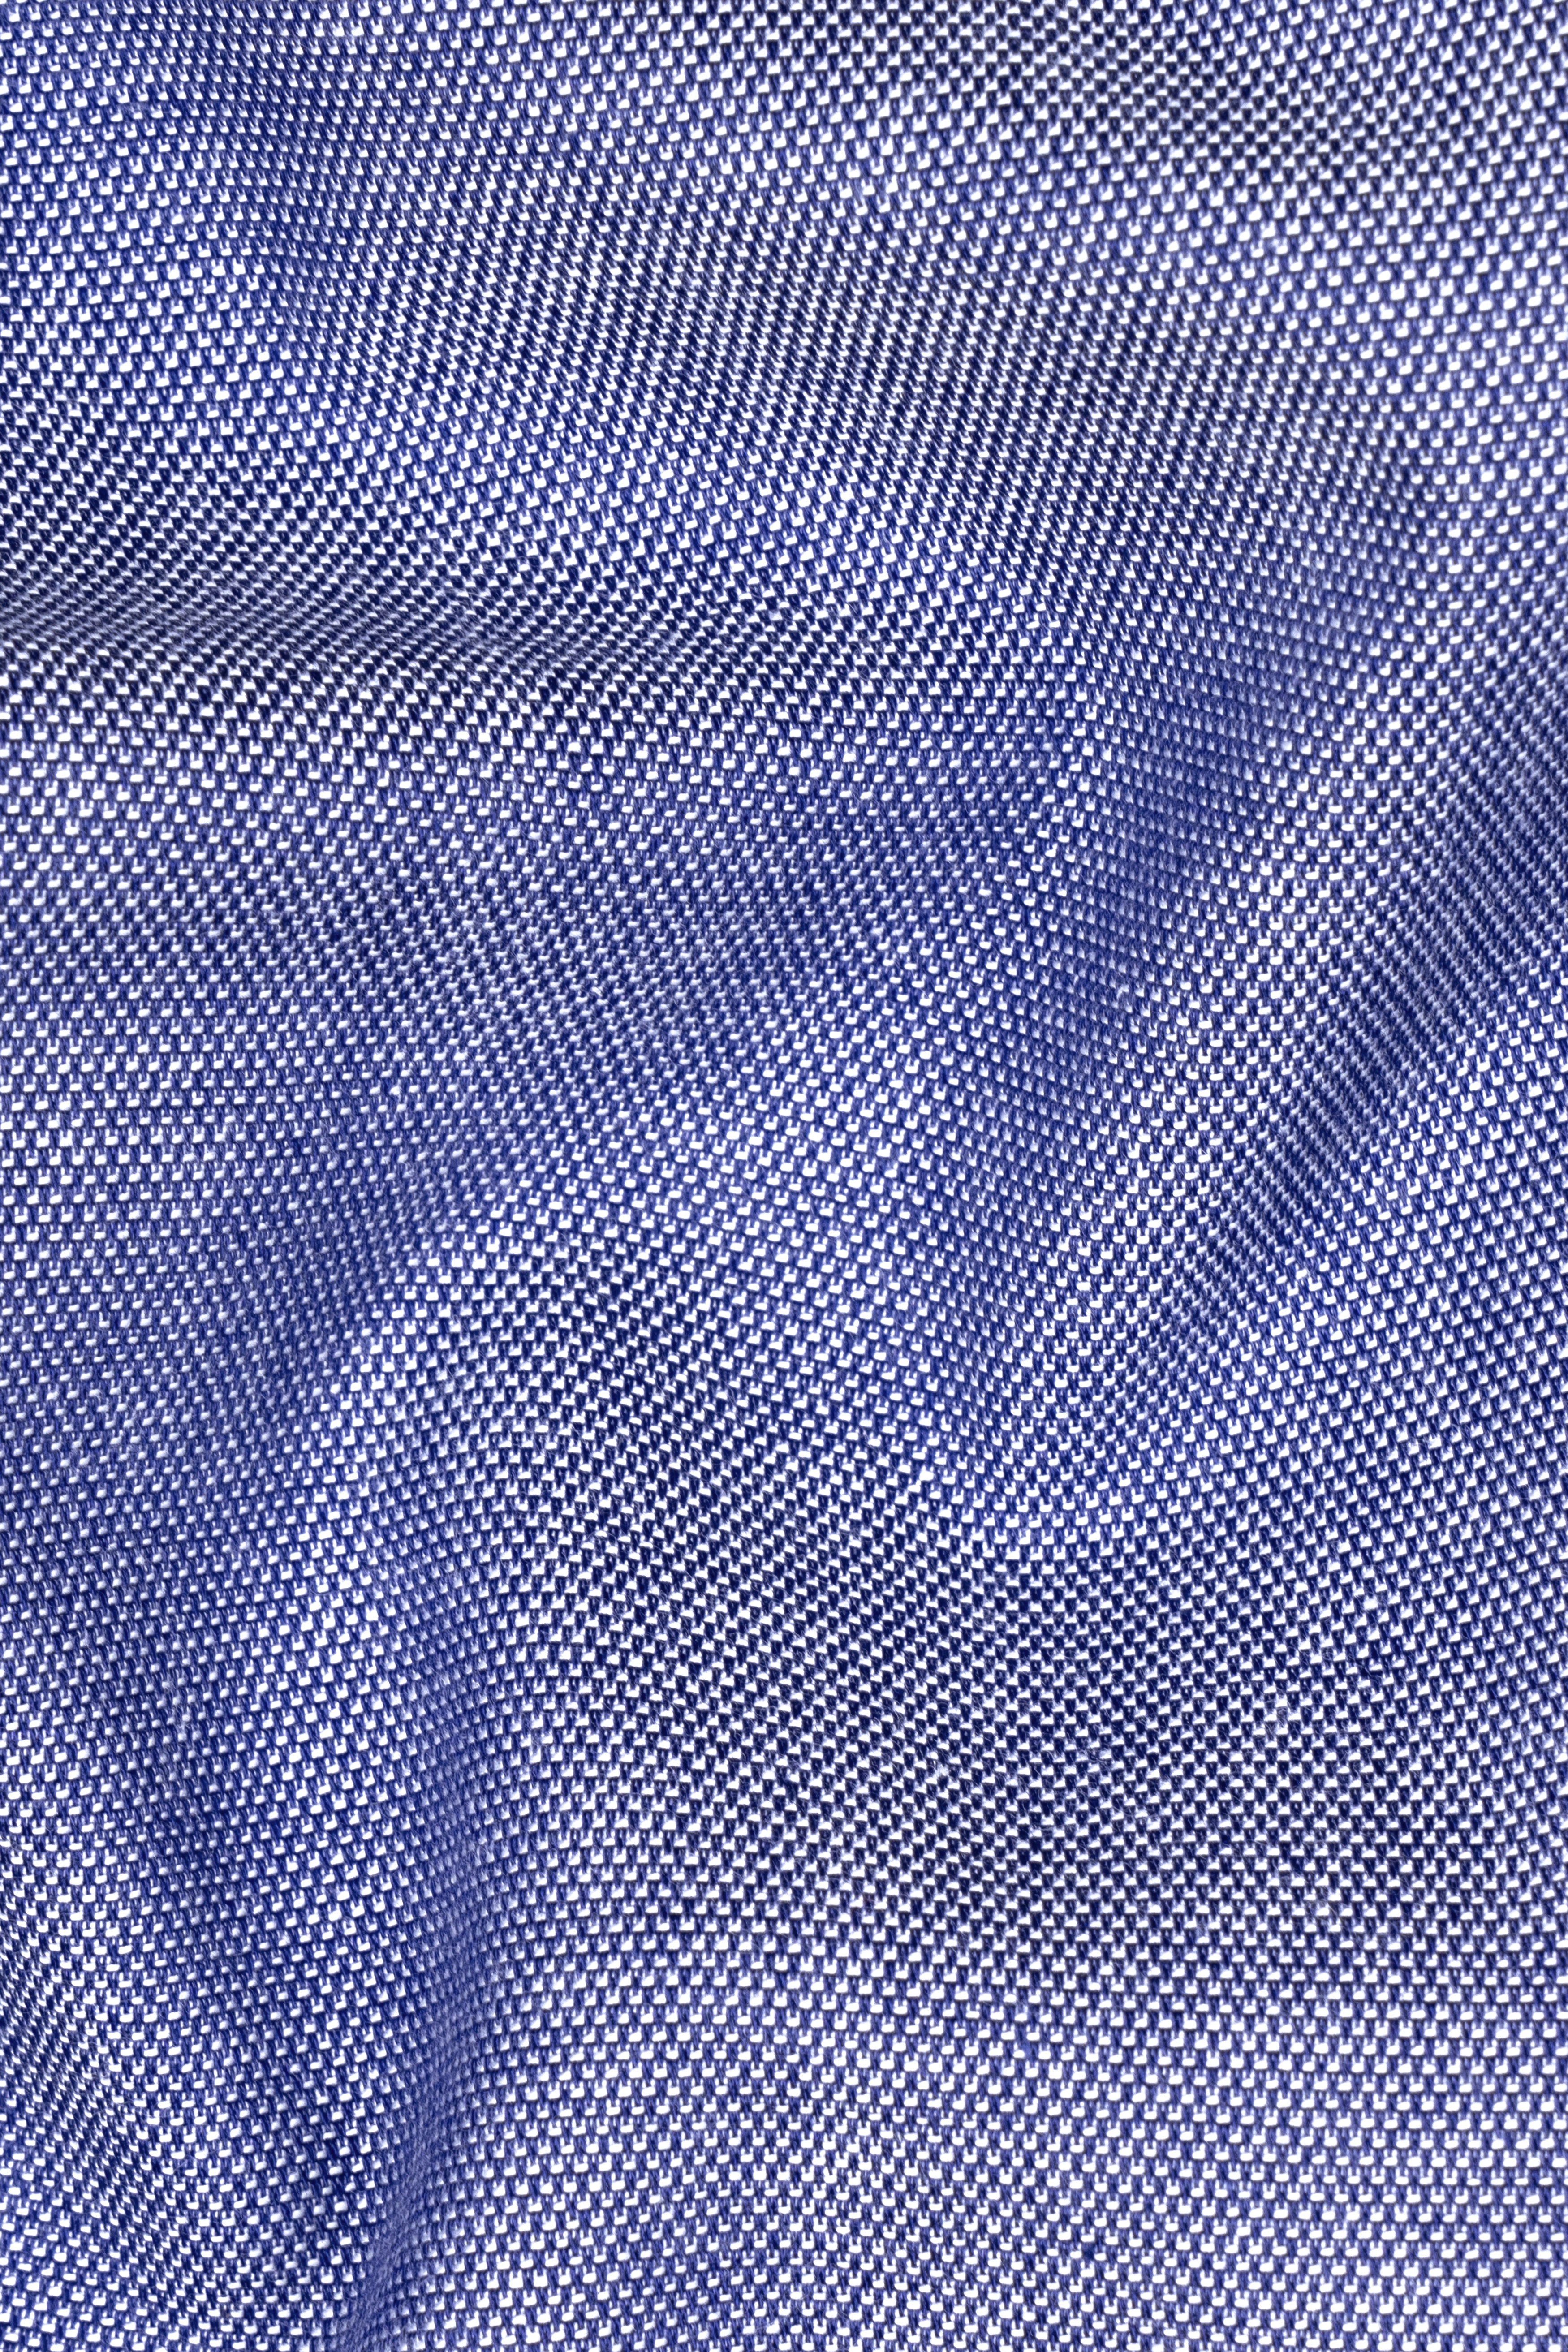 Marguerite Blue Royal Oxford Cotton Shirt